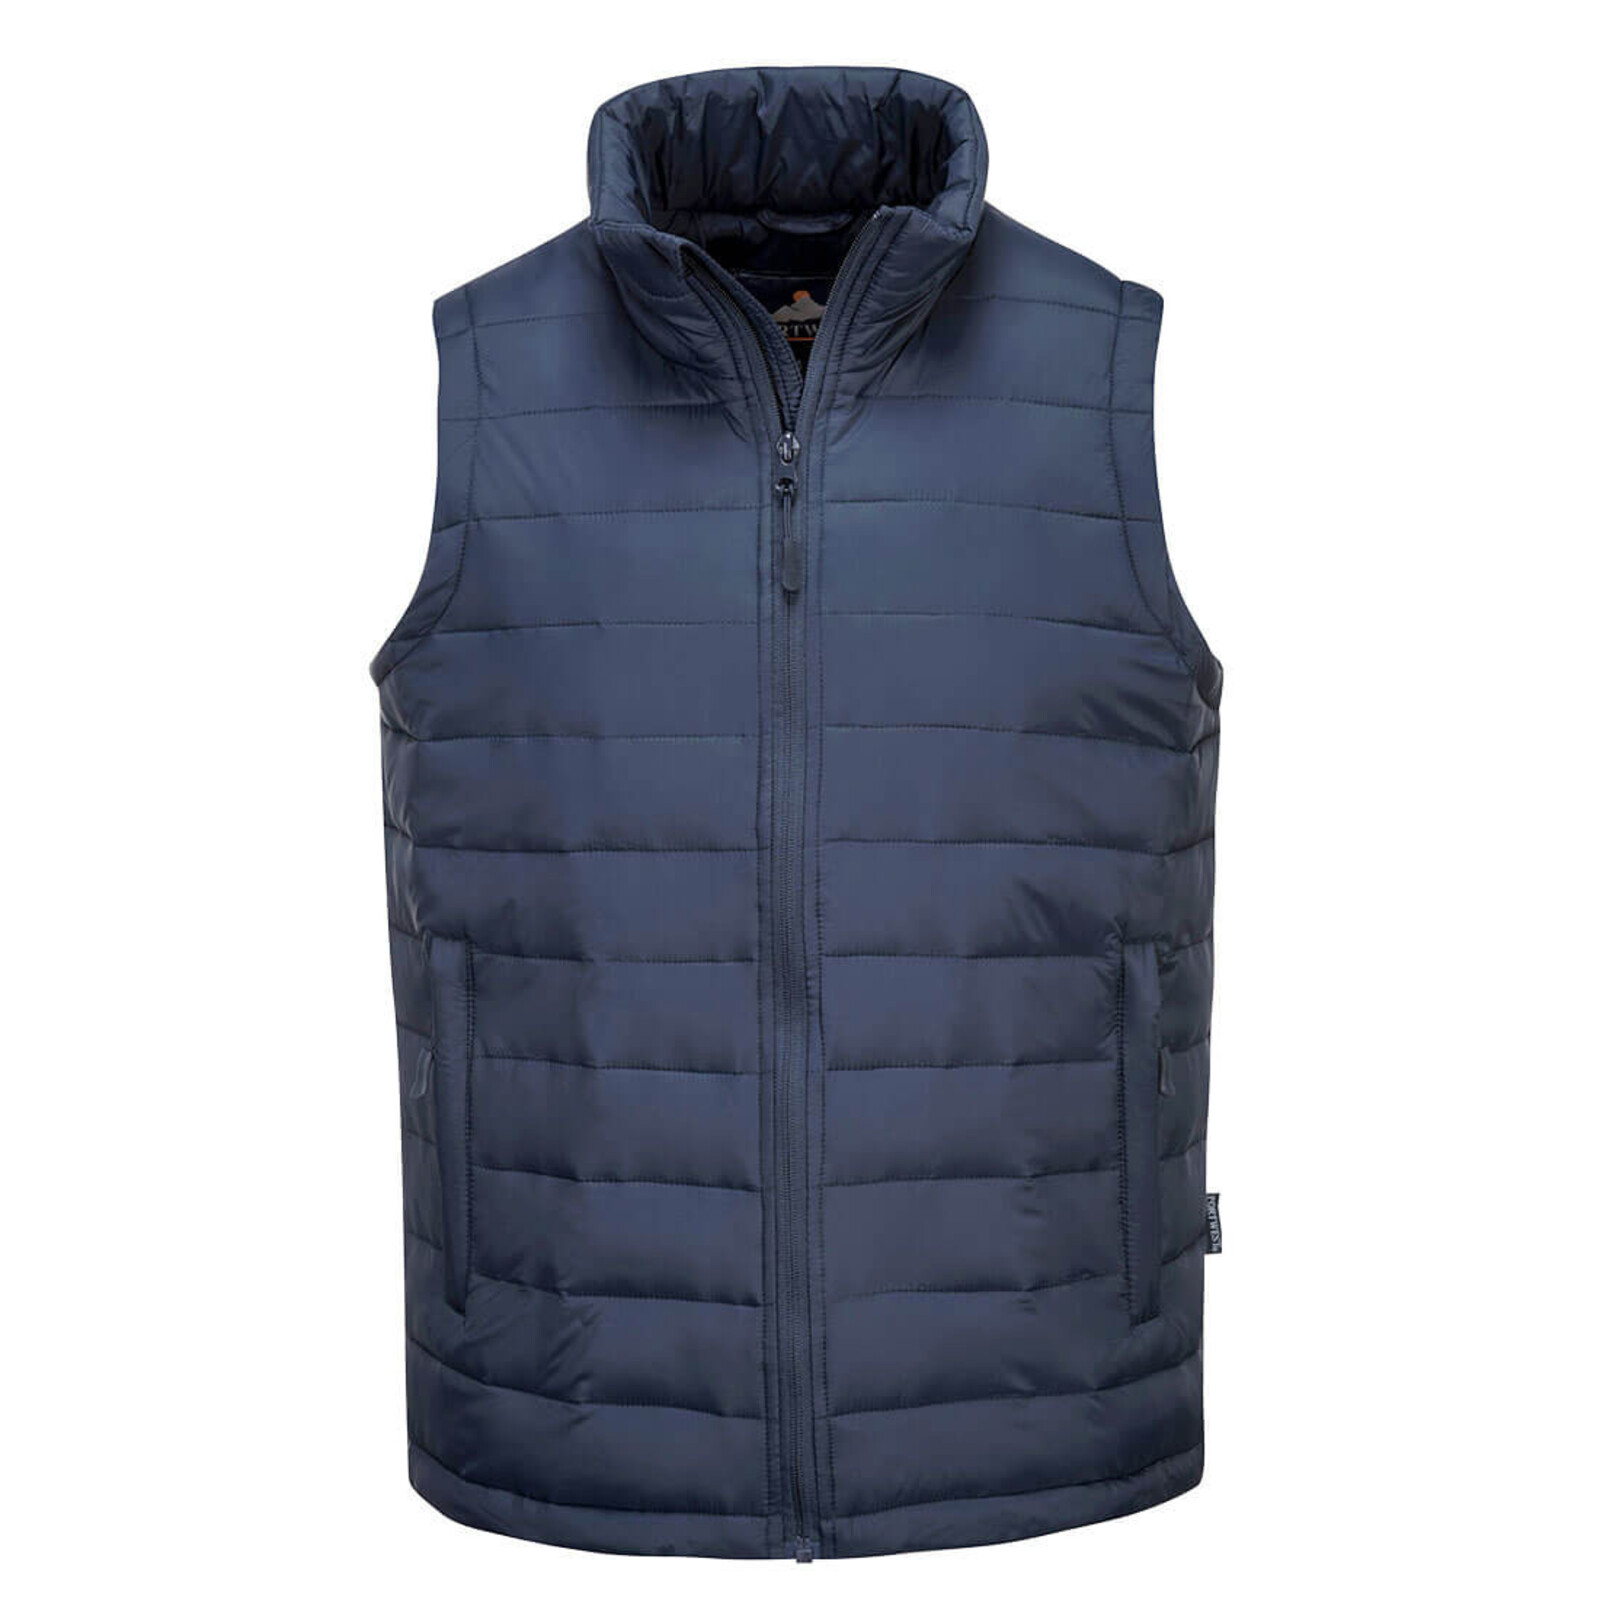 Pánska zateplená termo vesta Portwest Aspen S544 - veľkosť: M, farba: námornícka modrá